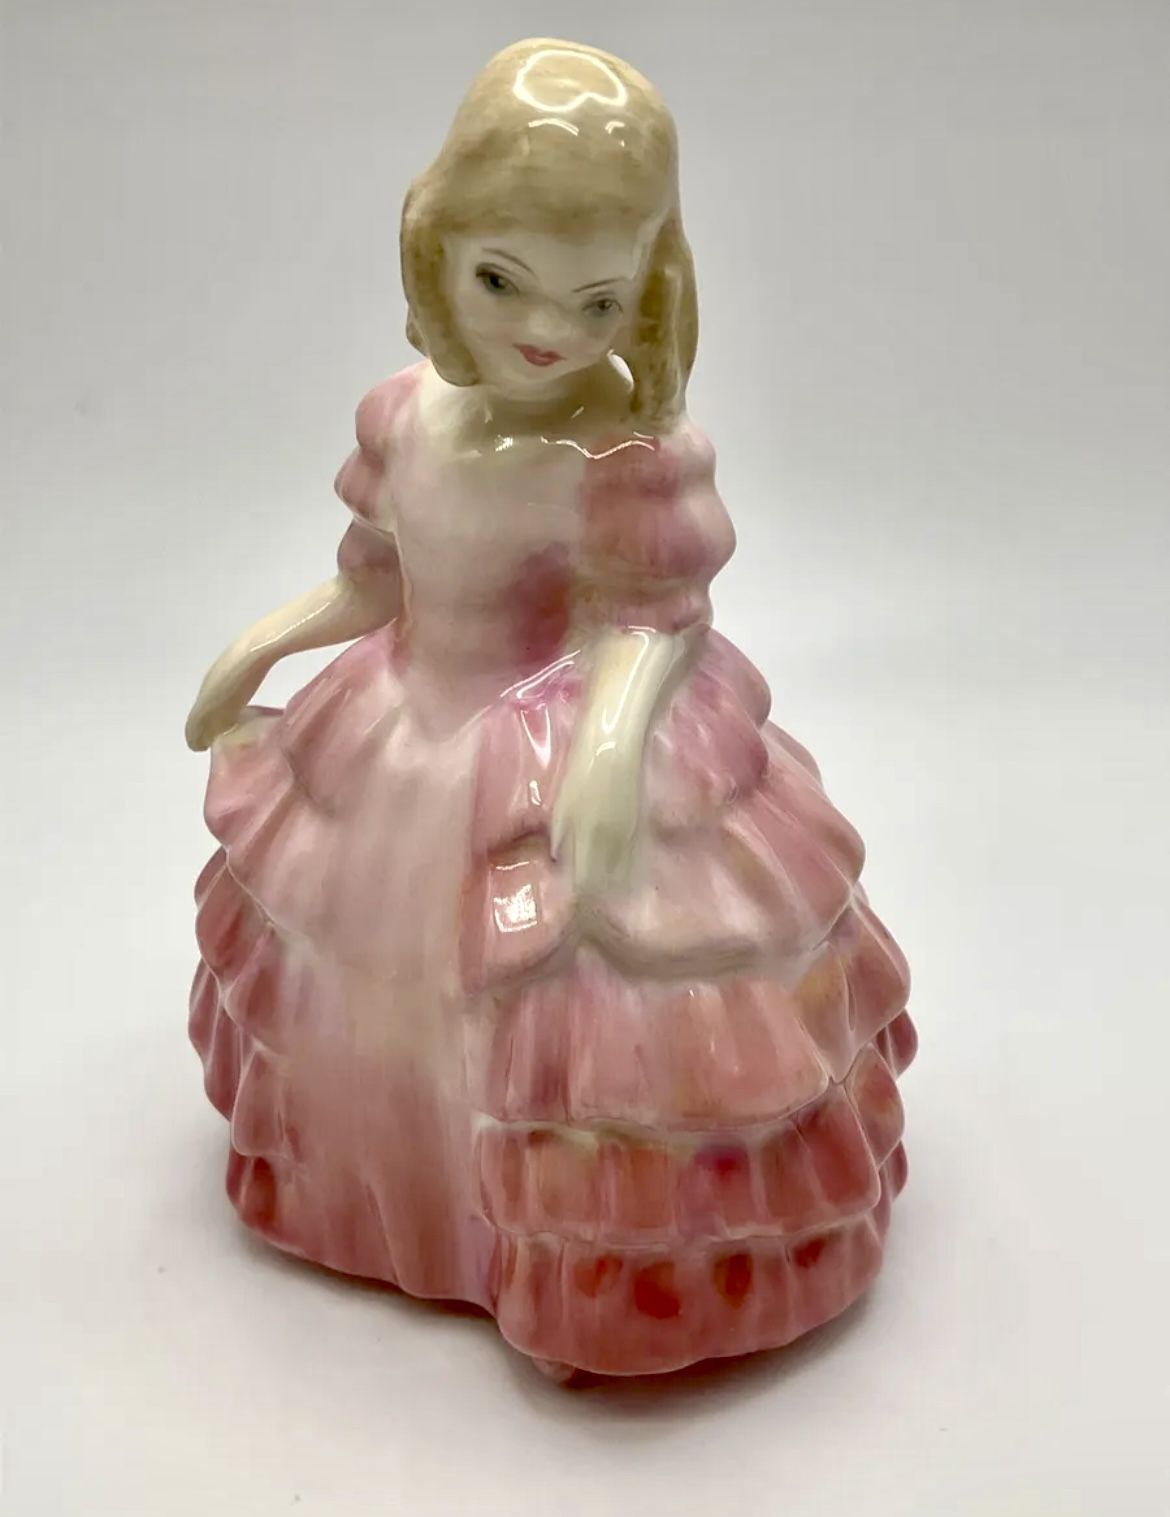 Vintage Royal Doulton Lady Girl Figurine “Rose” HN1368 Blonde In Pink Dress